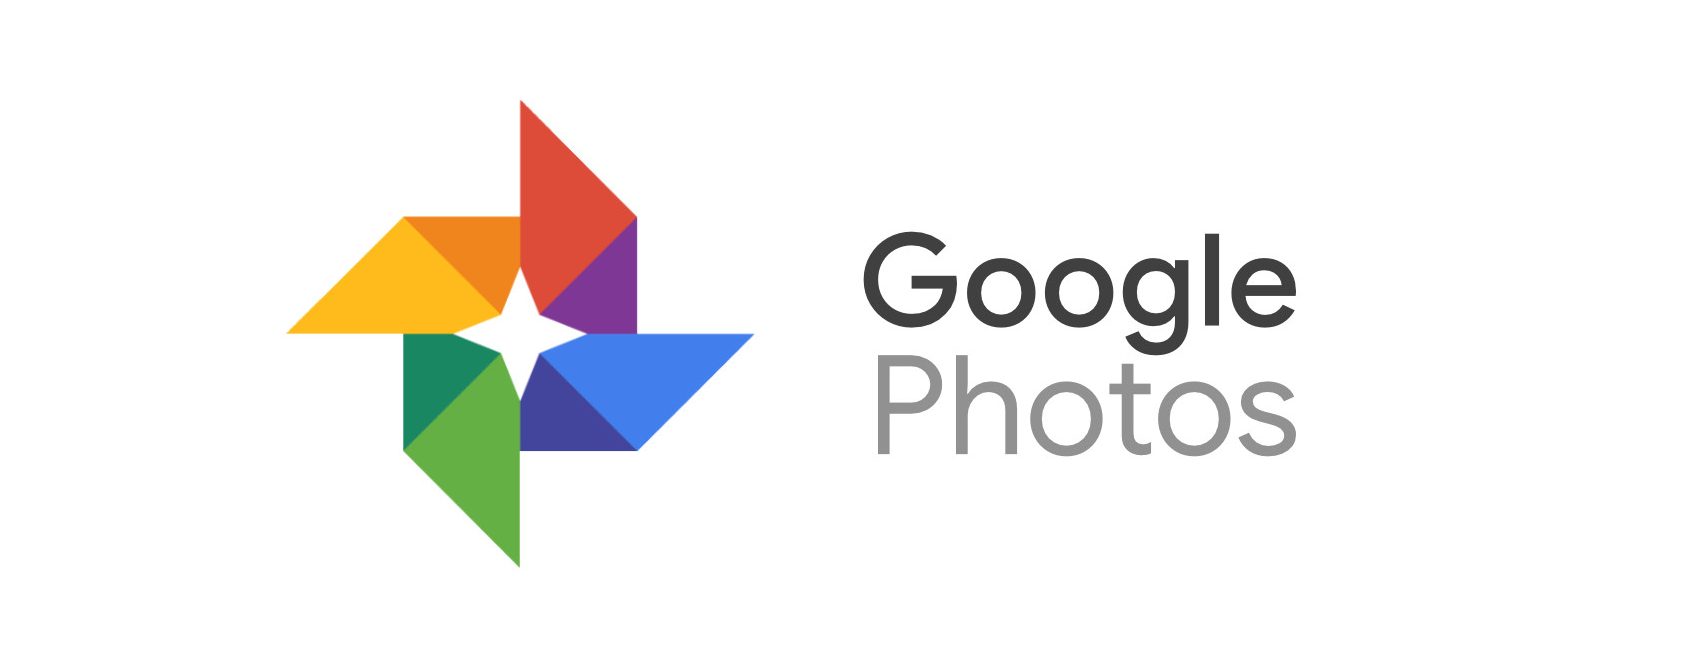 Google introduce un nou serviciu care alege și imprimă din aplicația dvs. Google Photos